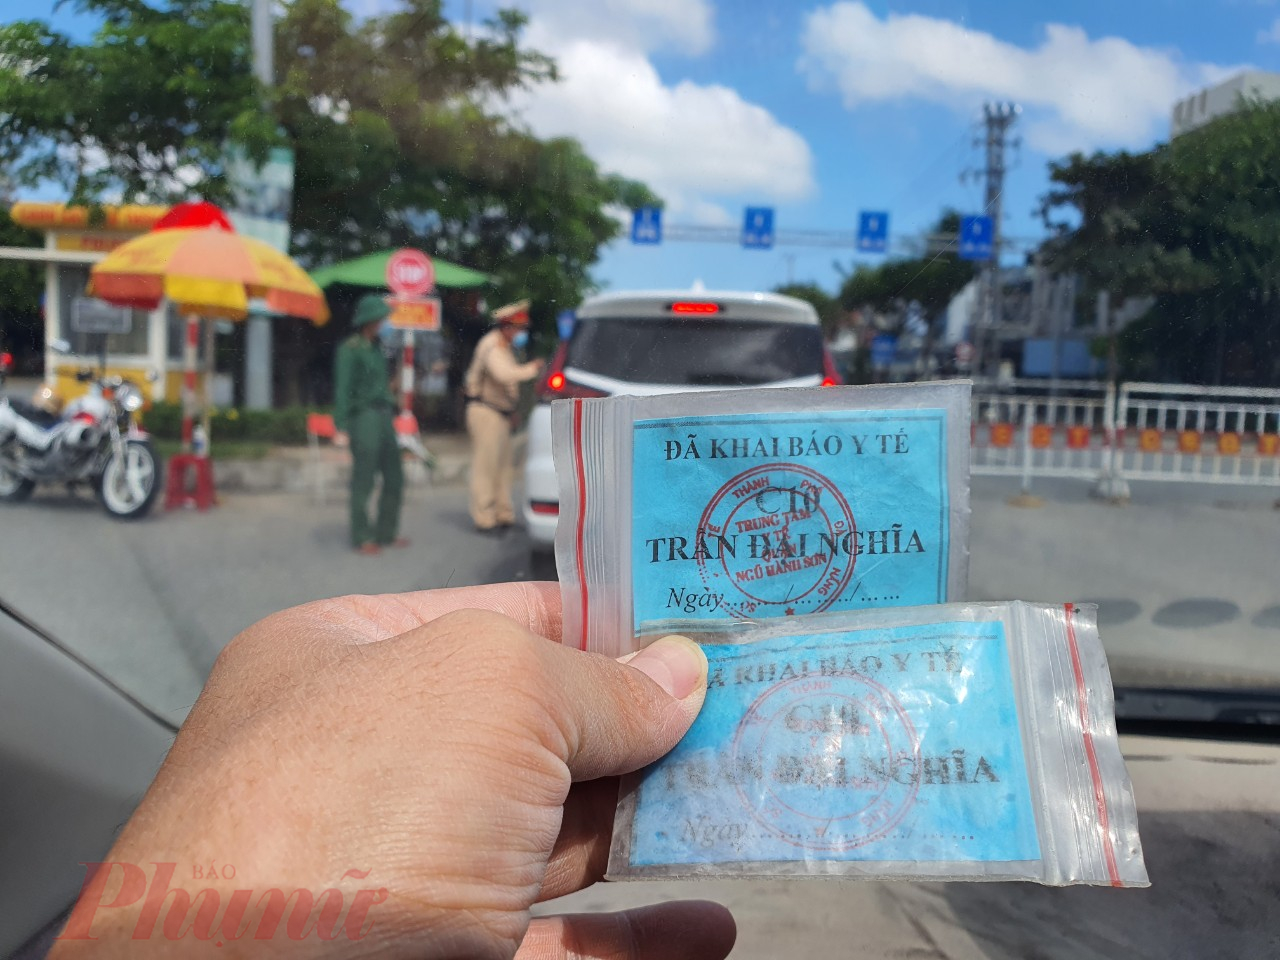 Các chốt kiểm soát ra vào Đà Nẵng dùng dấu đóng vào tay chứng nhận hoặc phát phiếu để kiểm soát người khai báo y tế